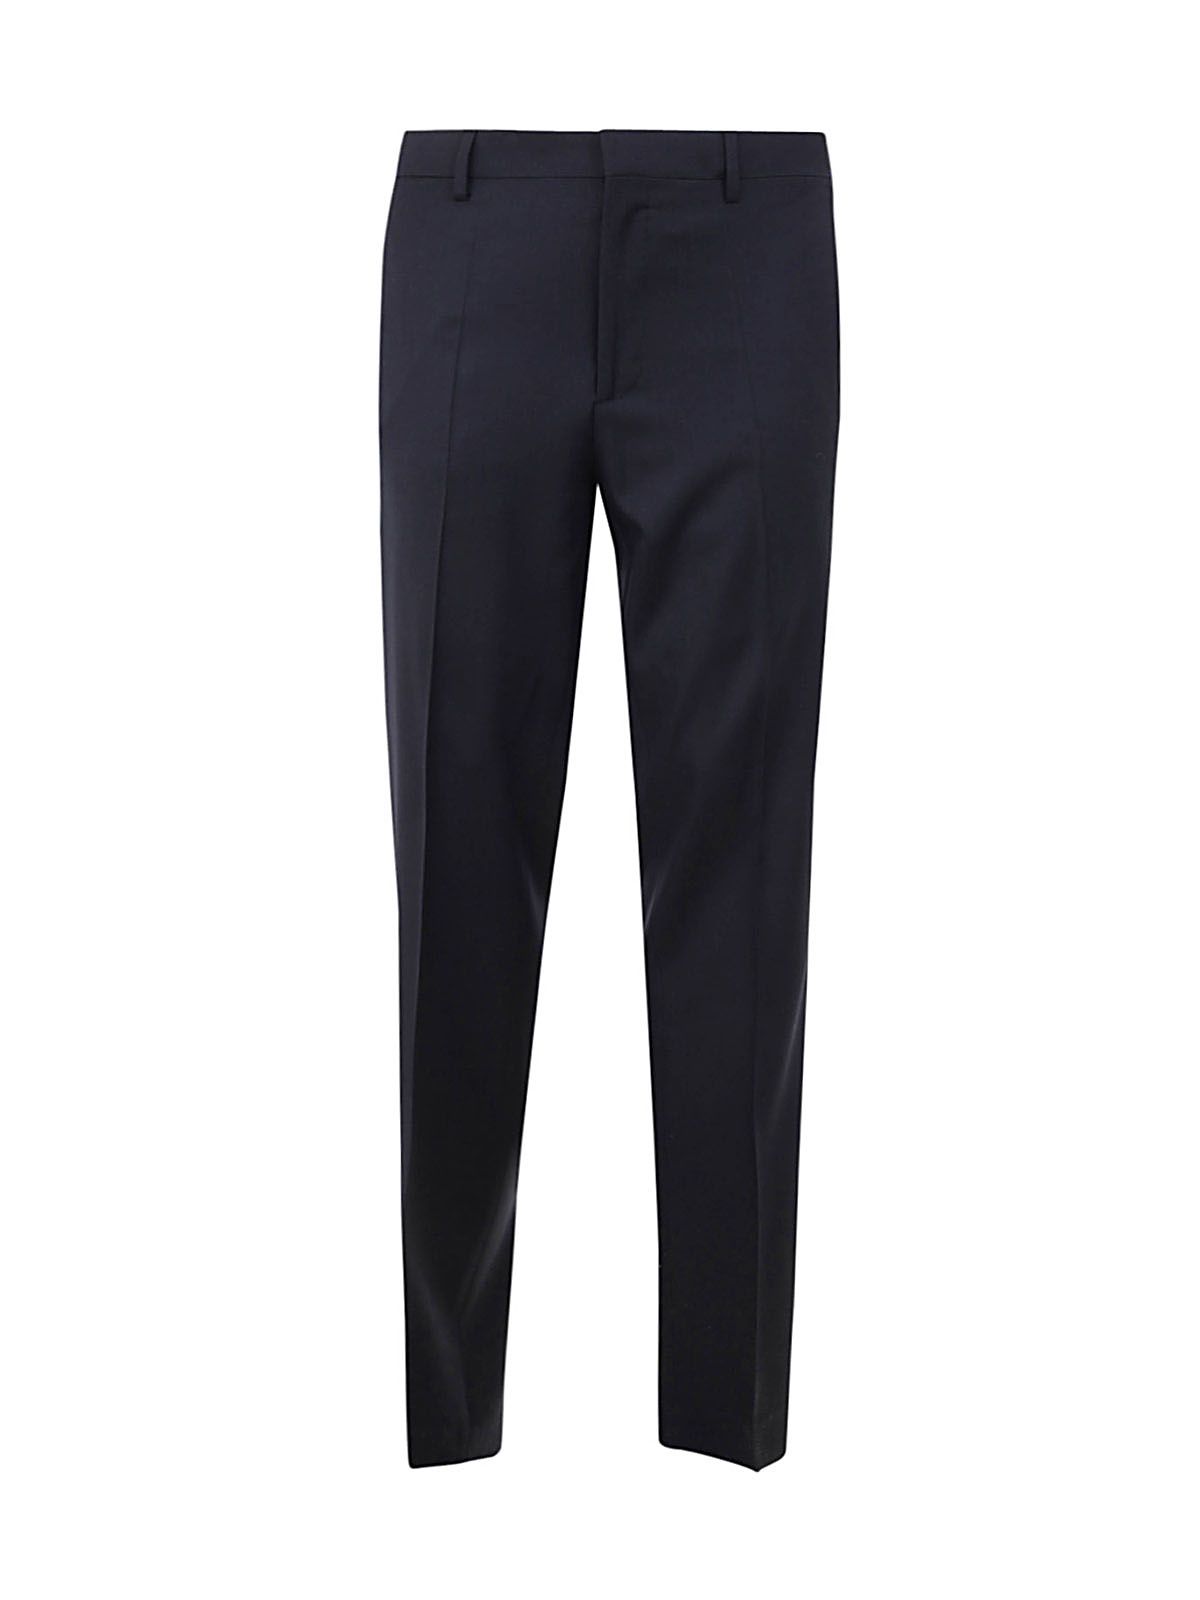 Shop Lanvin Men's Wool Pants: New Trousers